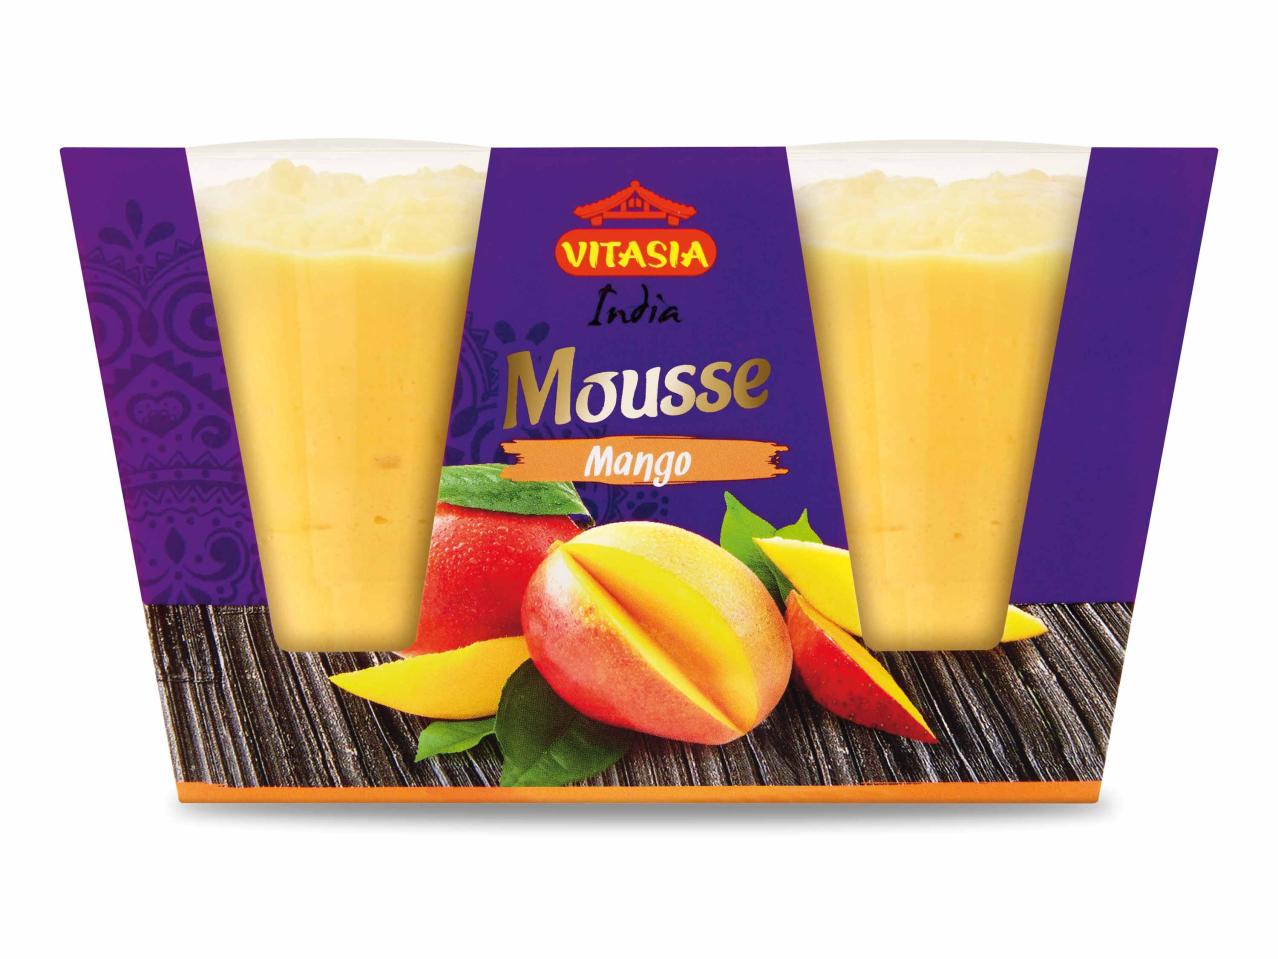 Mango Mousse